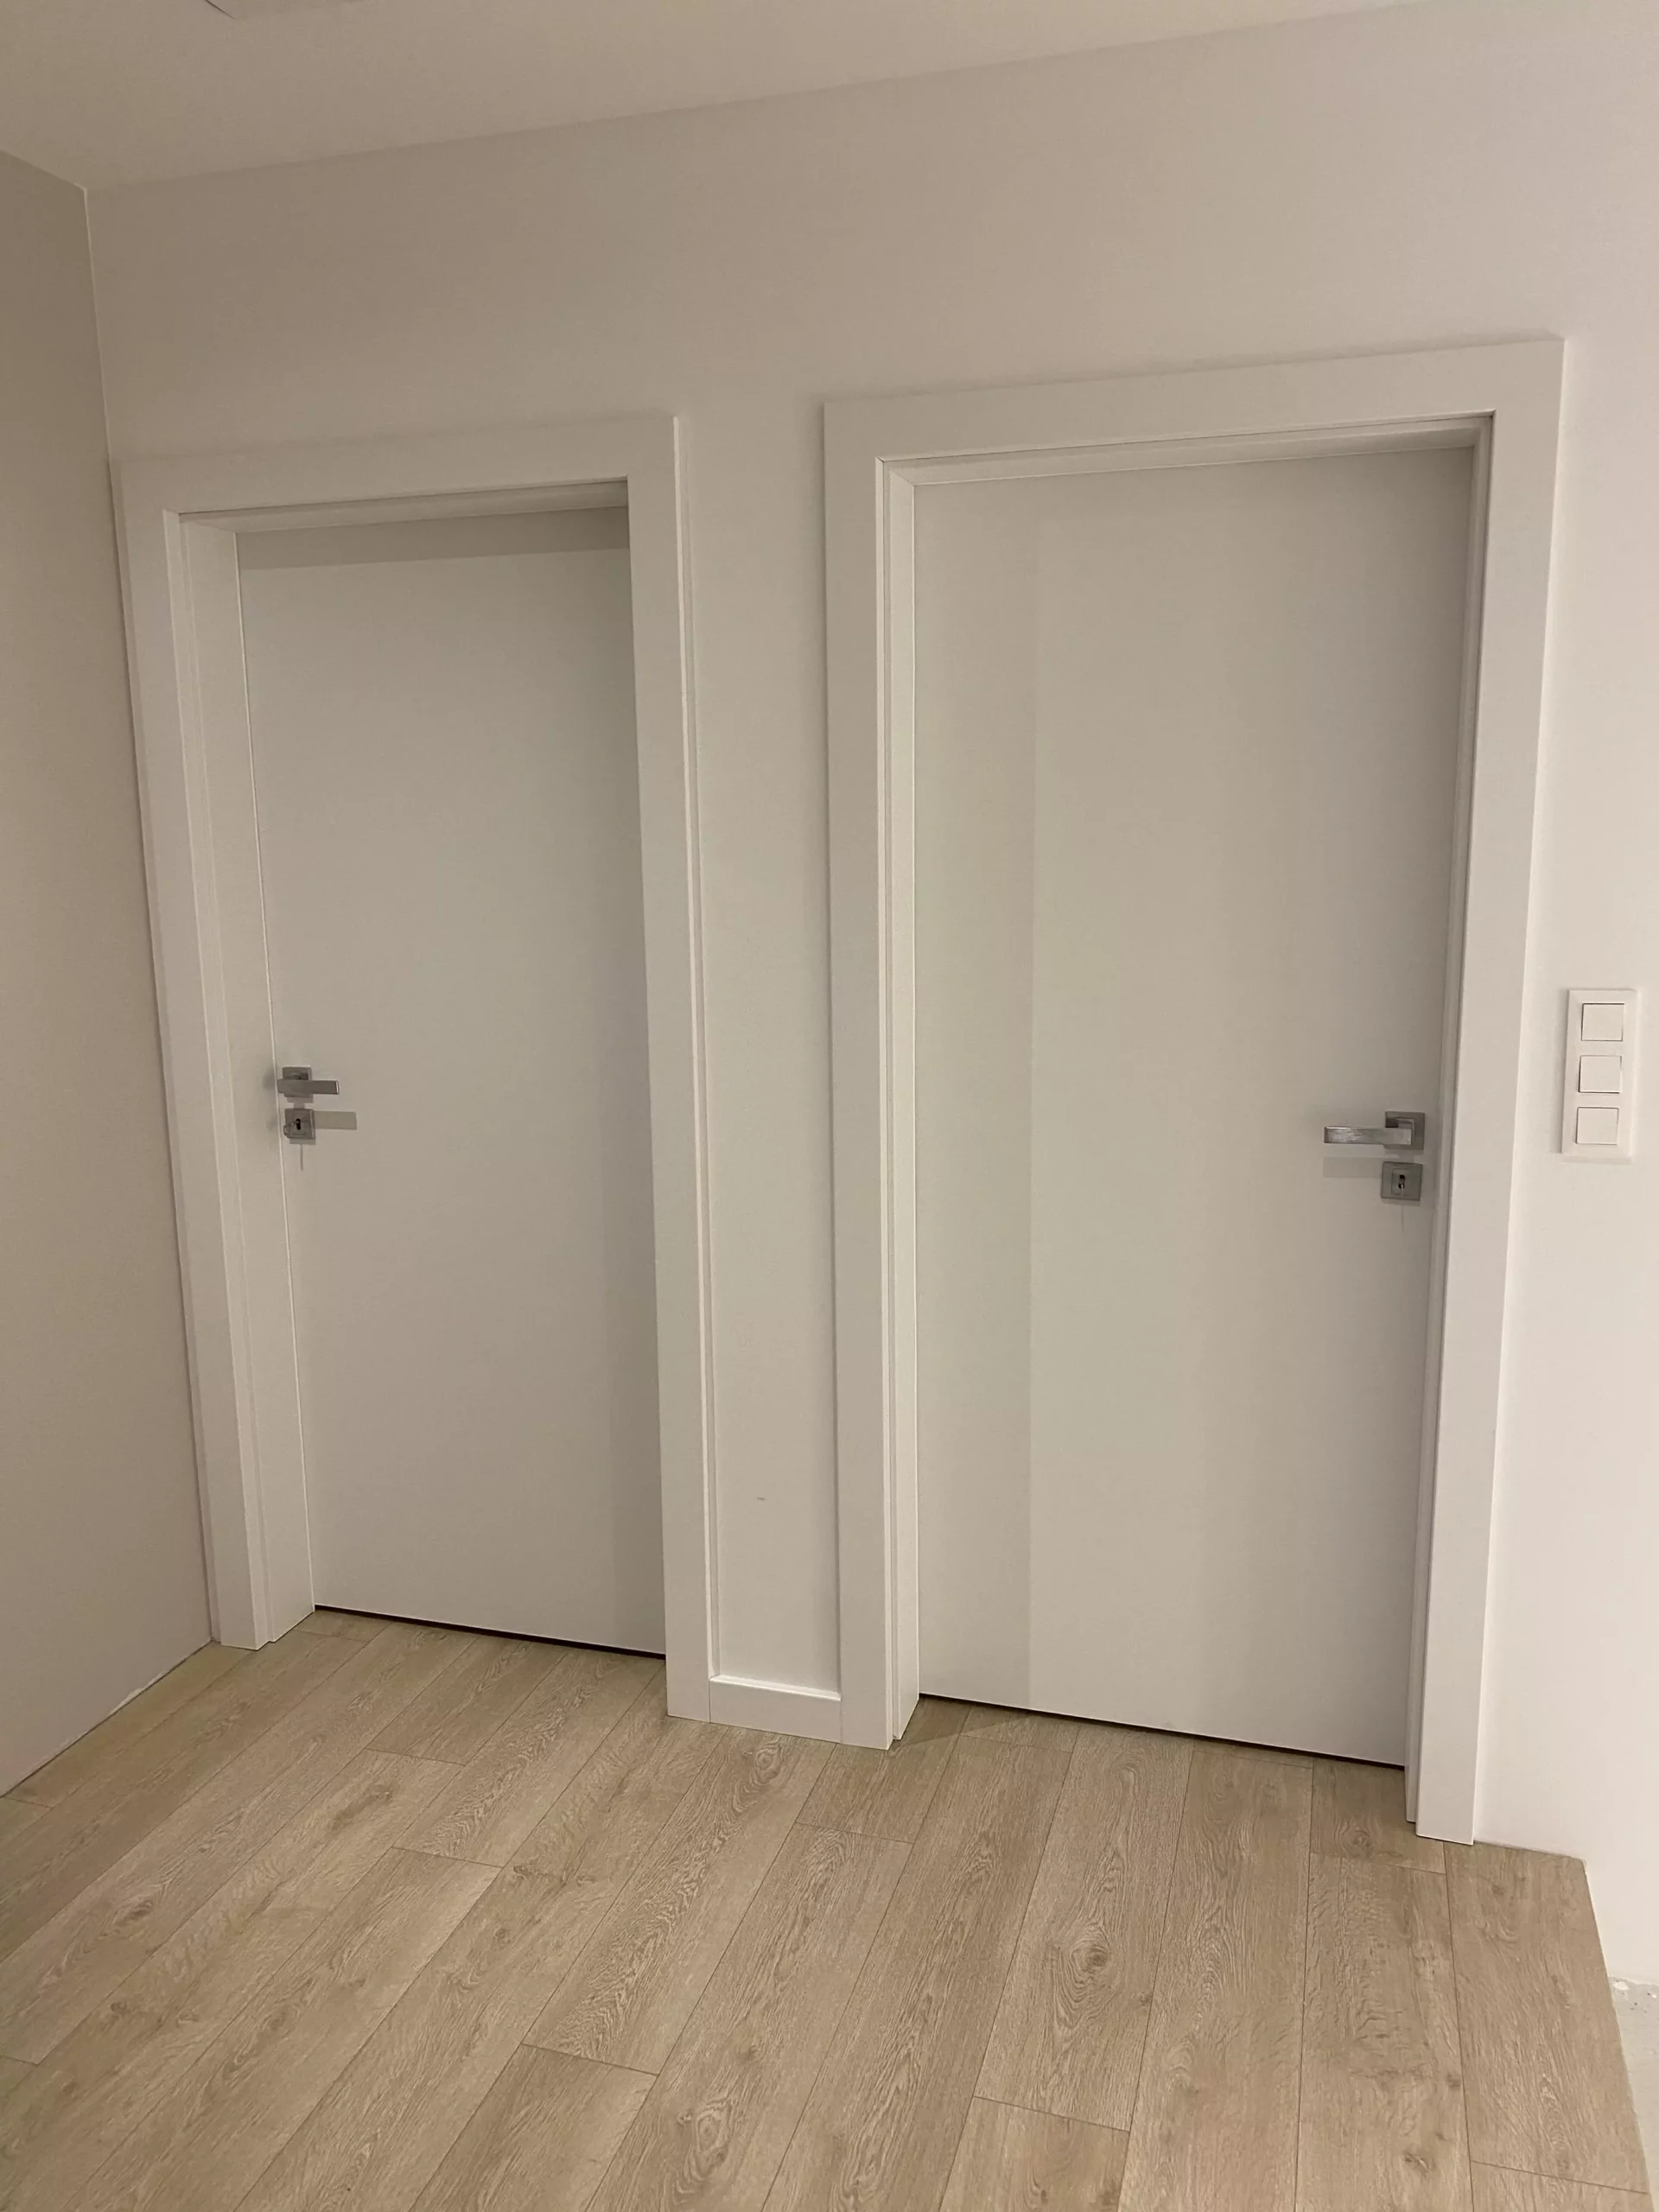 Drzwi i podłoga w domu jednorodzinnym w Trójmieście